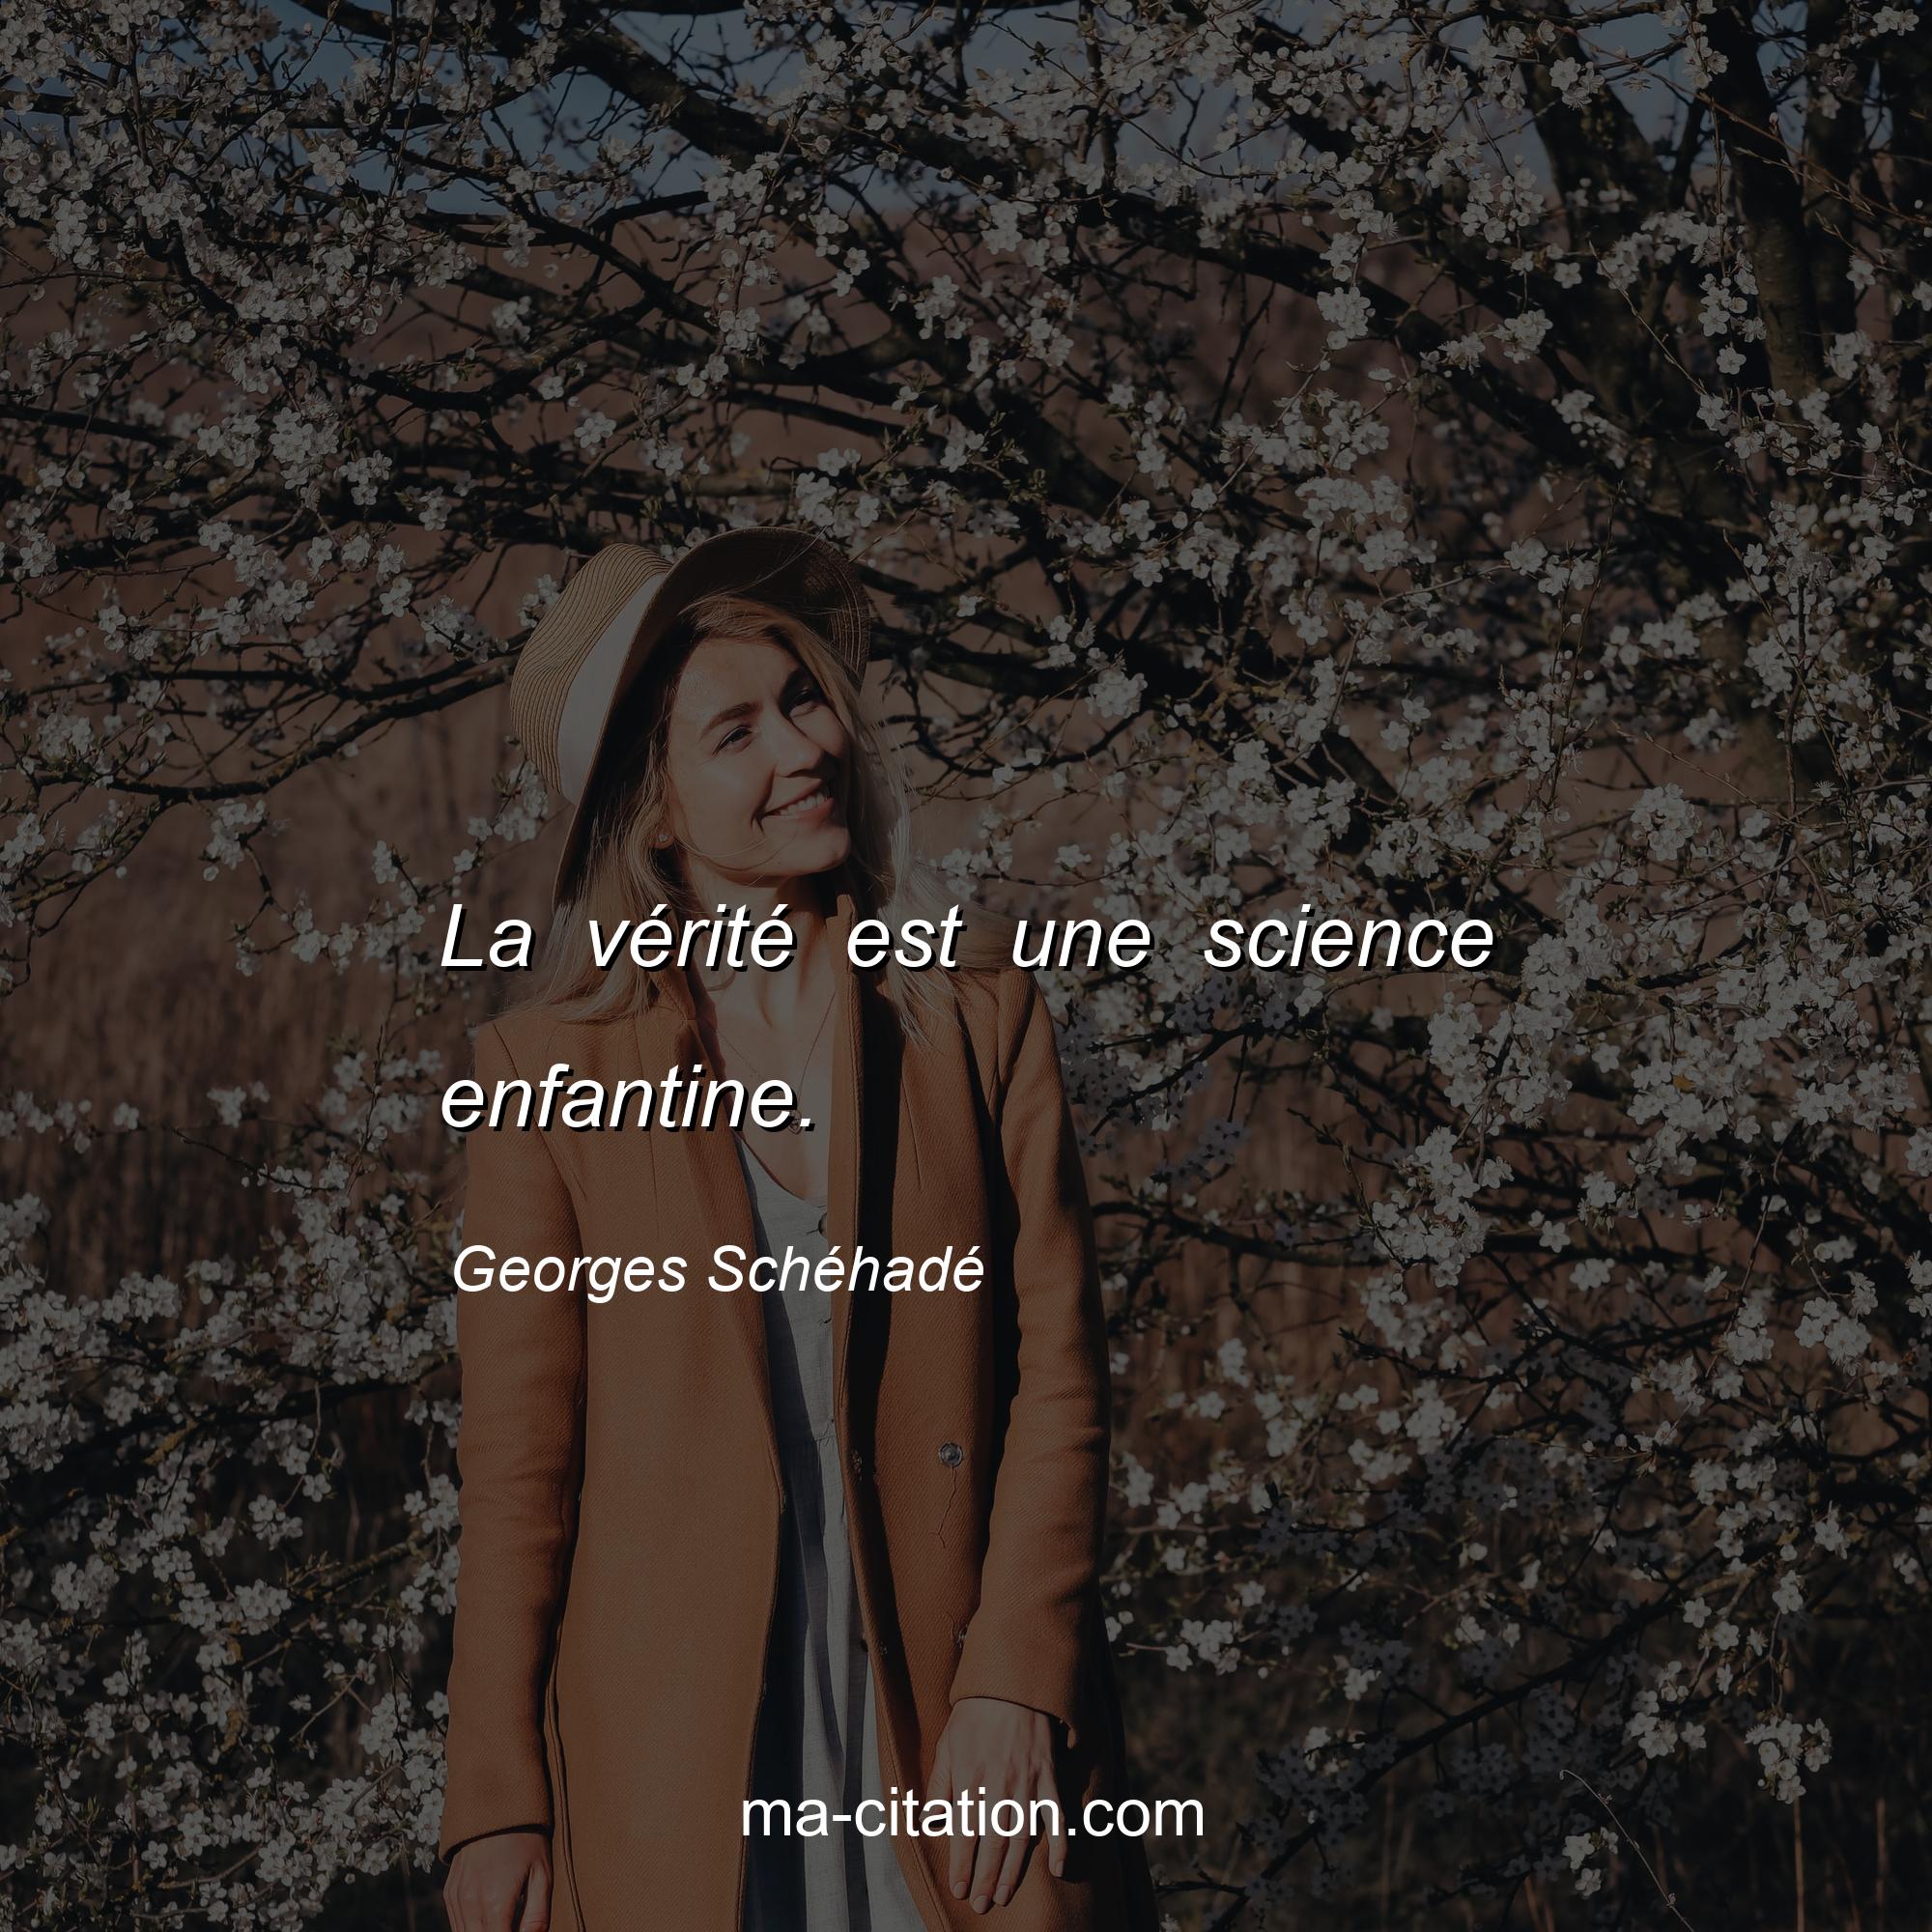 Georges Schéhadé : La vérité est une science enfantine.